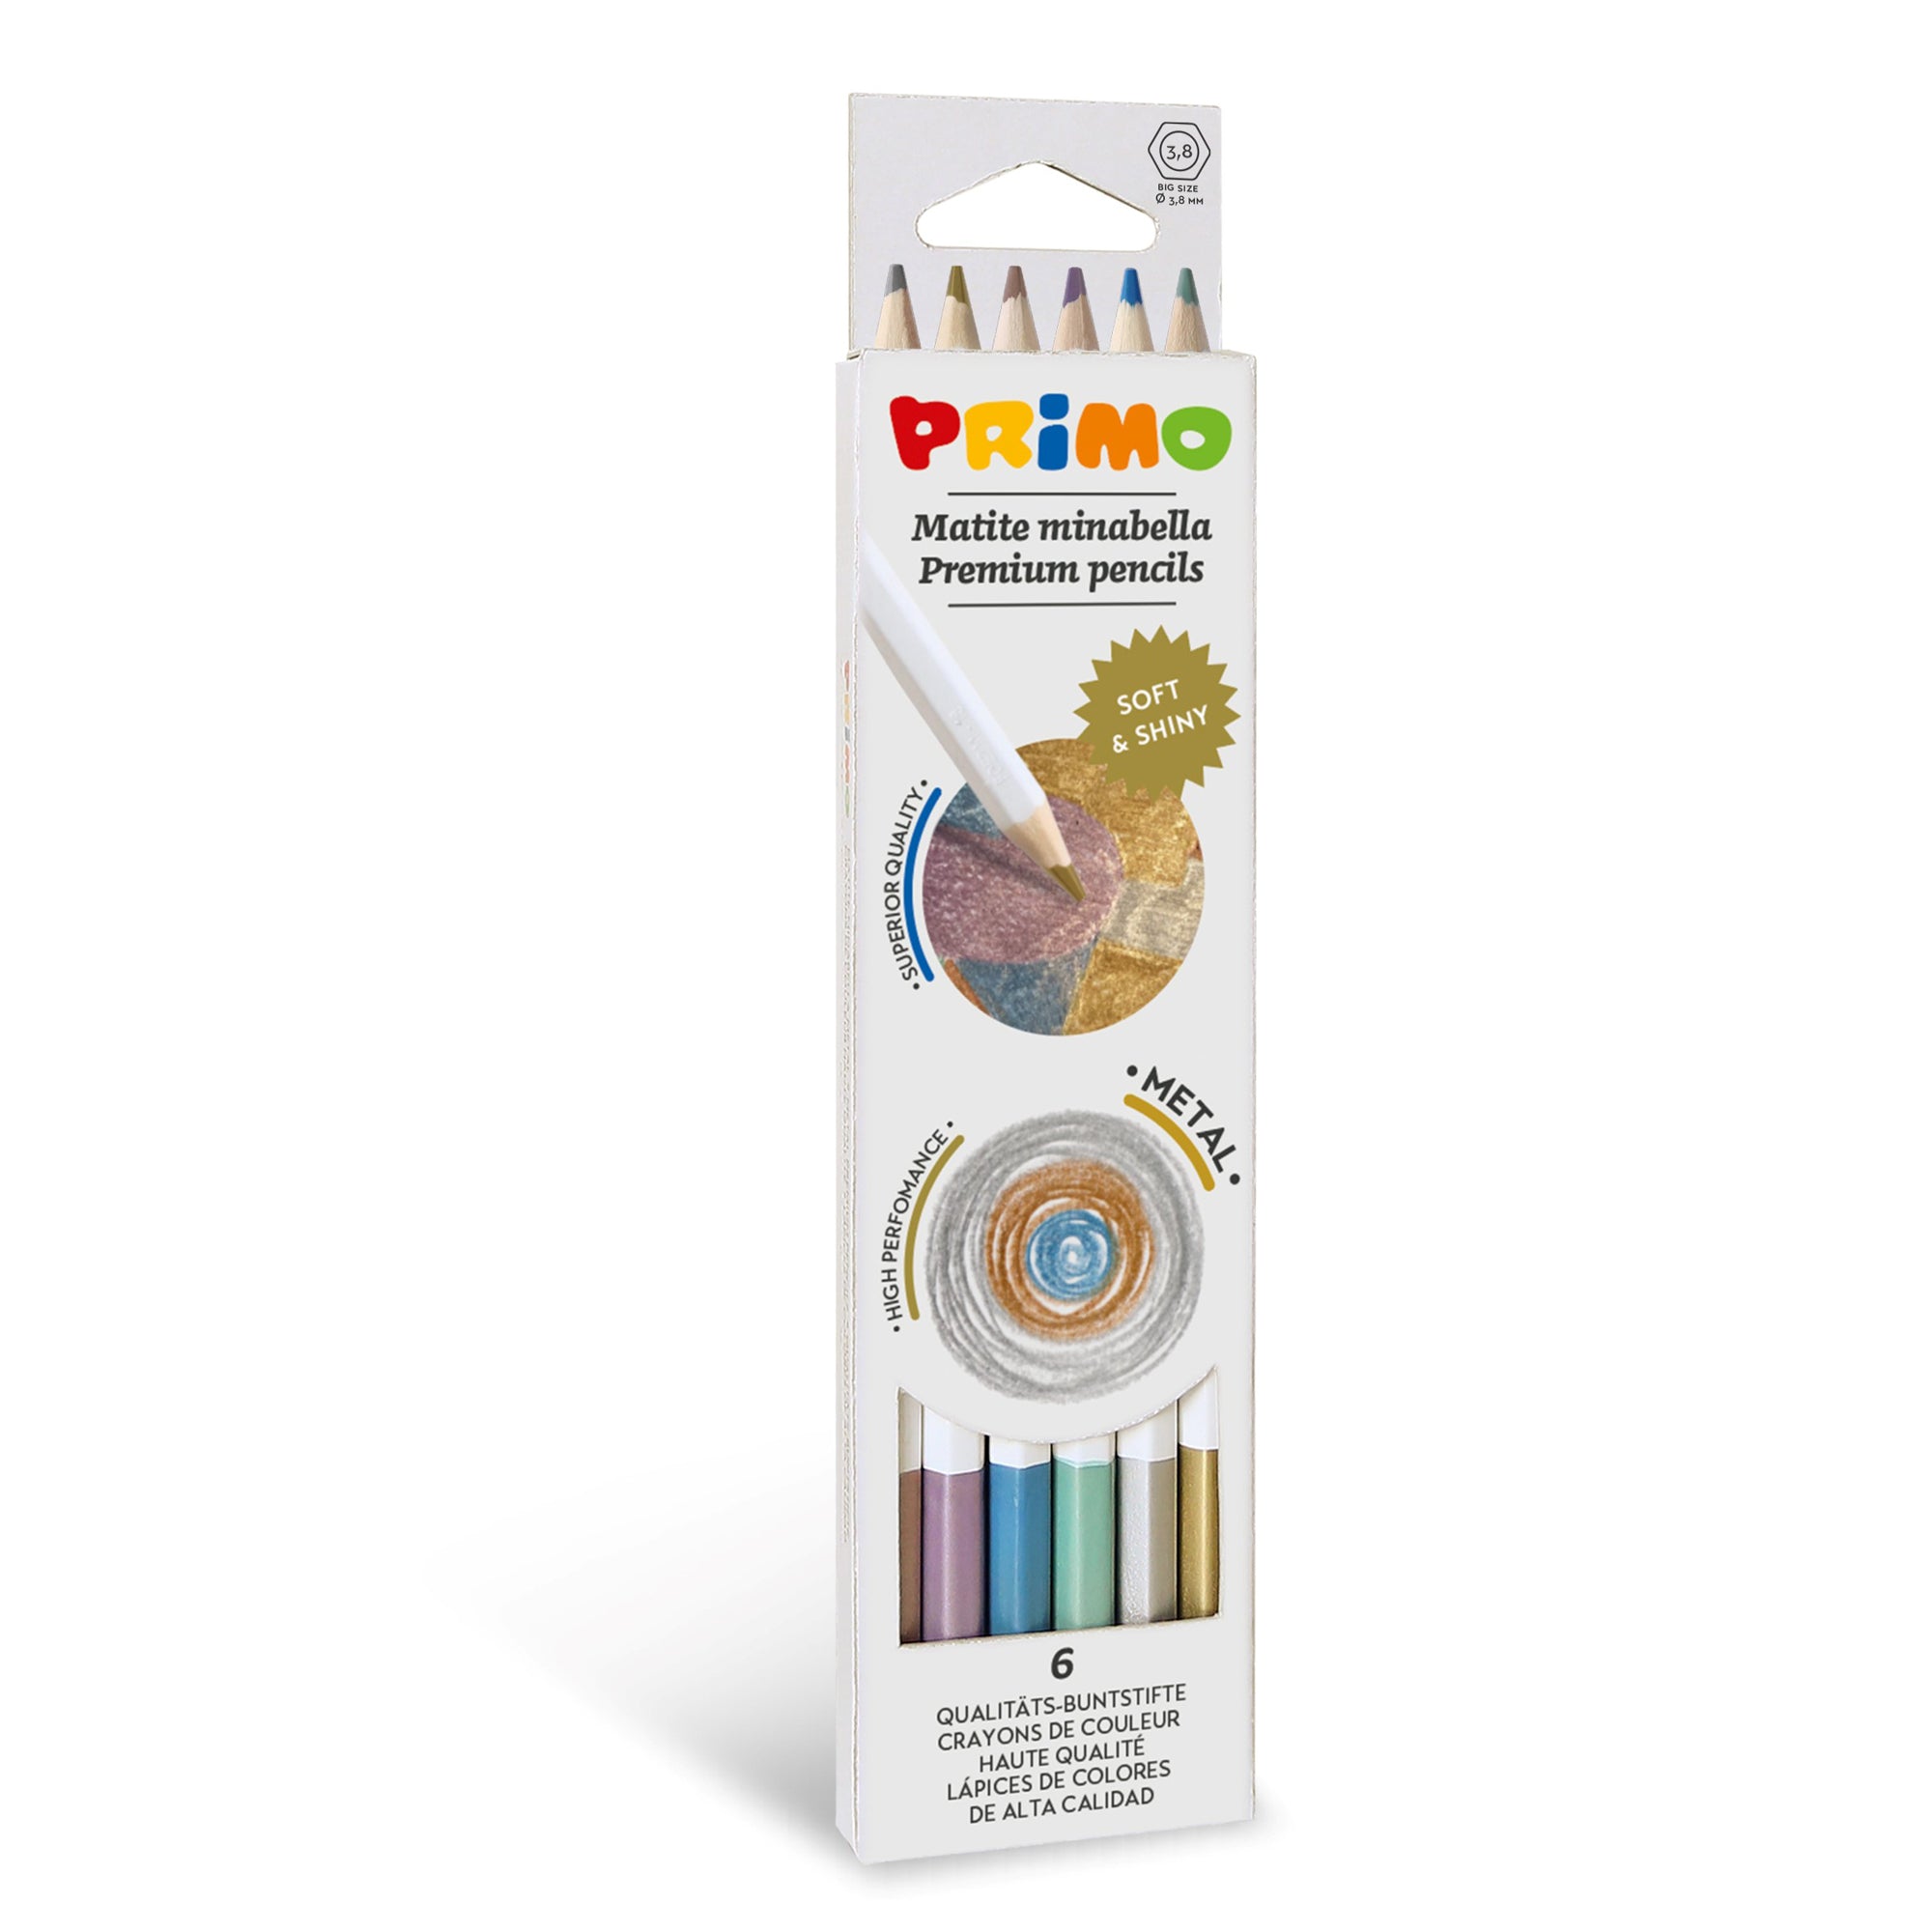 primo-morocolor-astuccio-6-matite-minabella-diam-3-8mm-colori-metallizzati-assortiti-primo